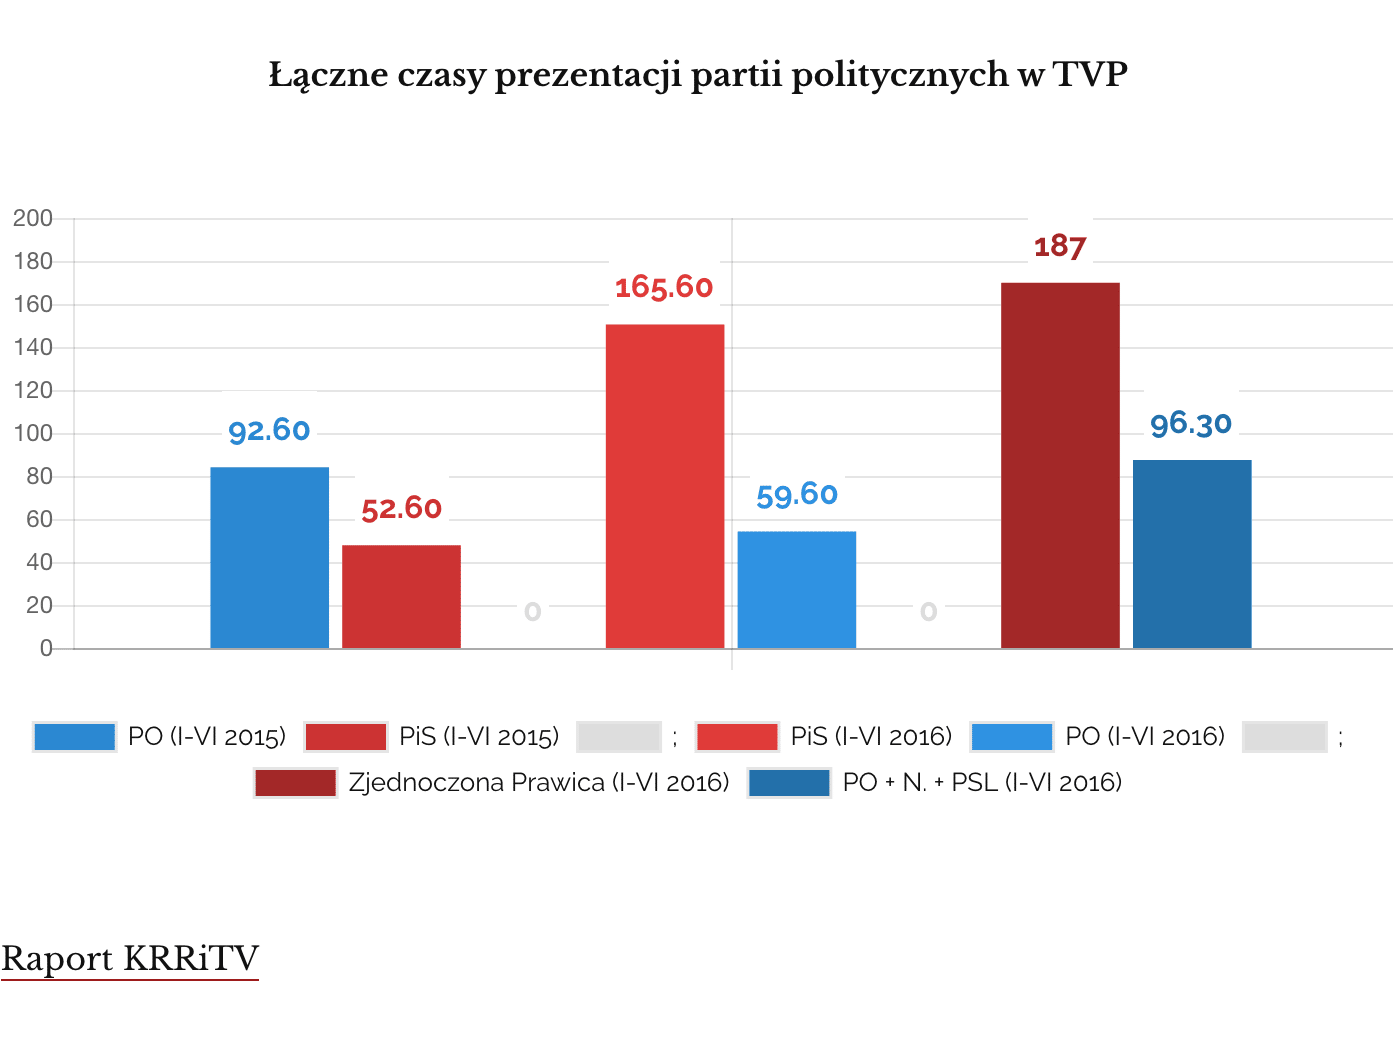 Partie polityczne w TVP (2015 vs 2016)